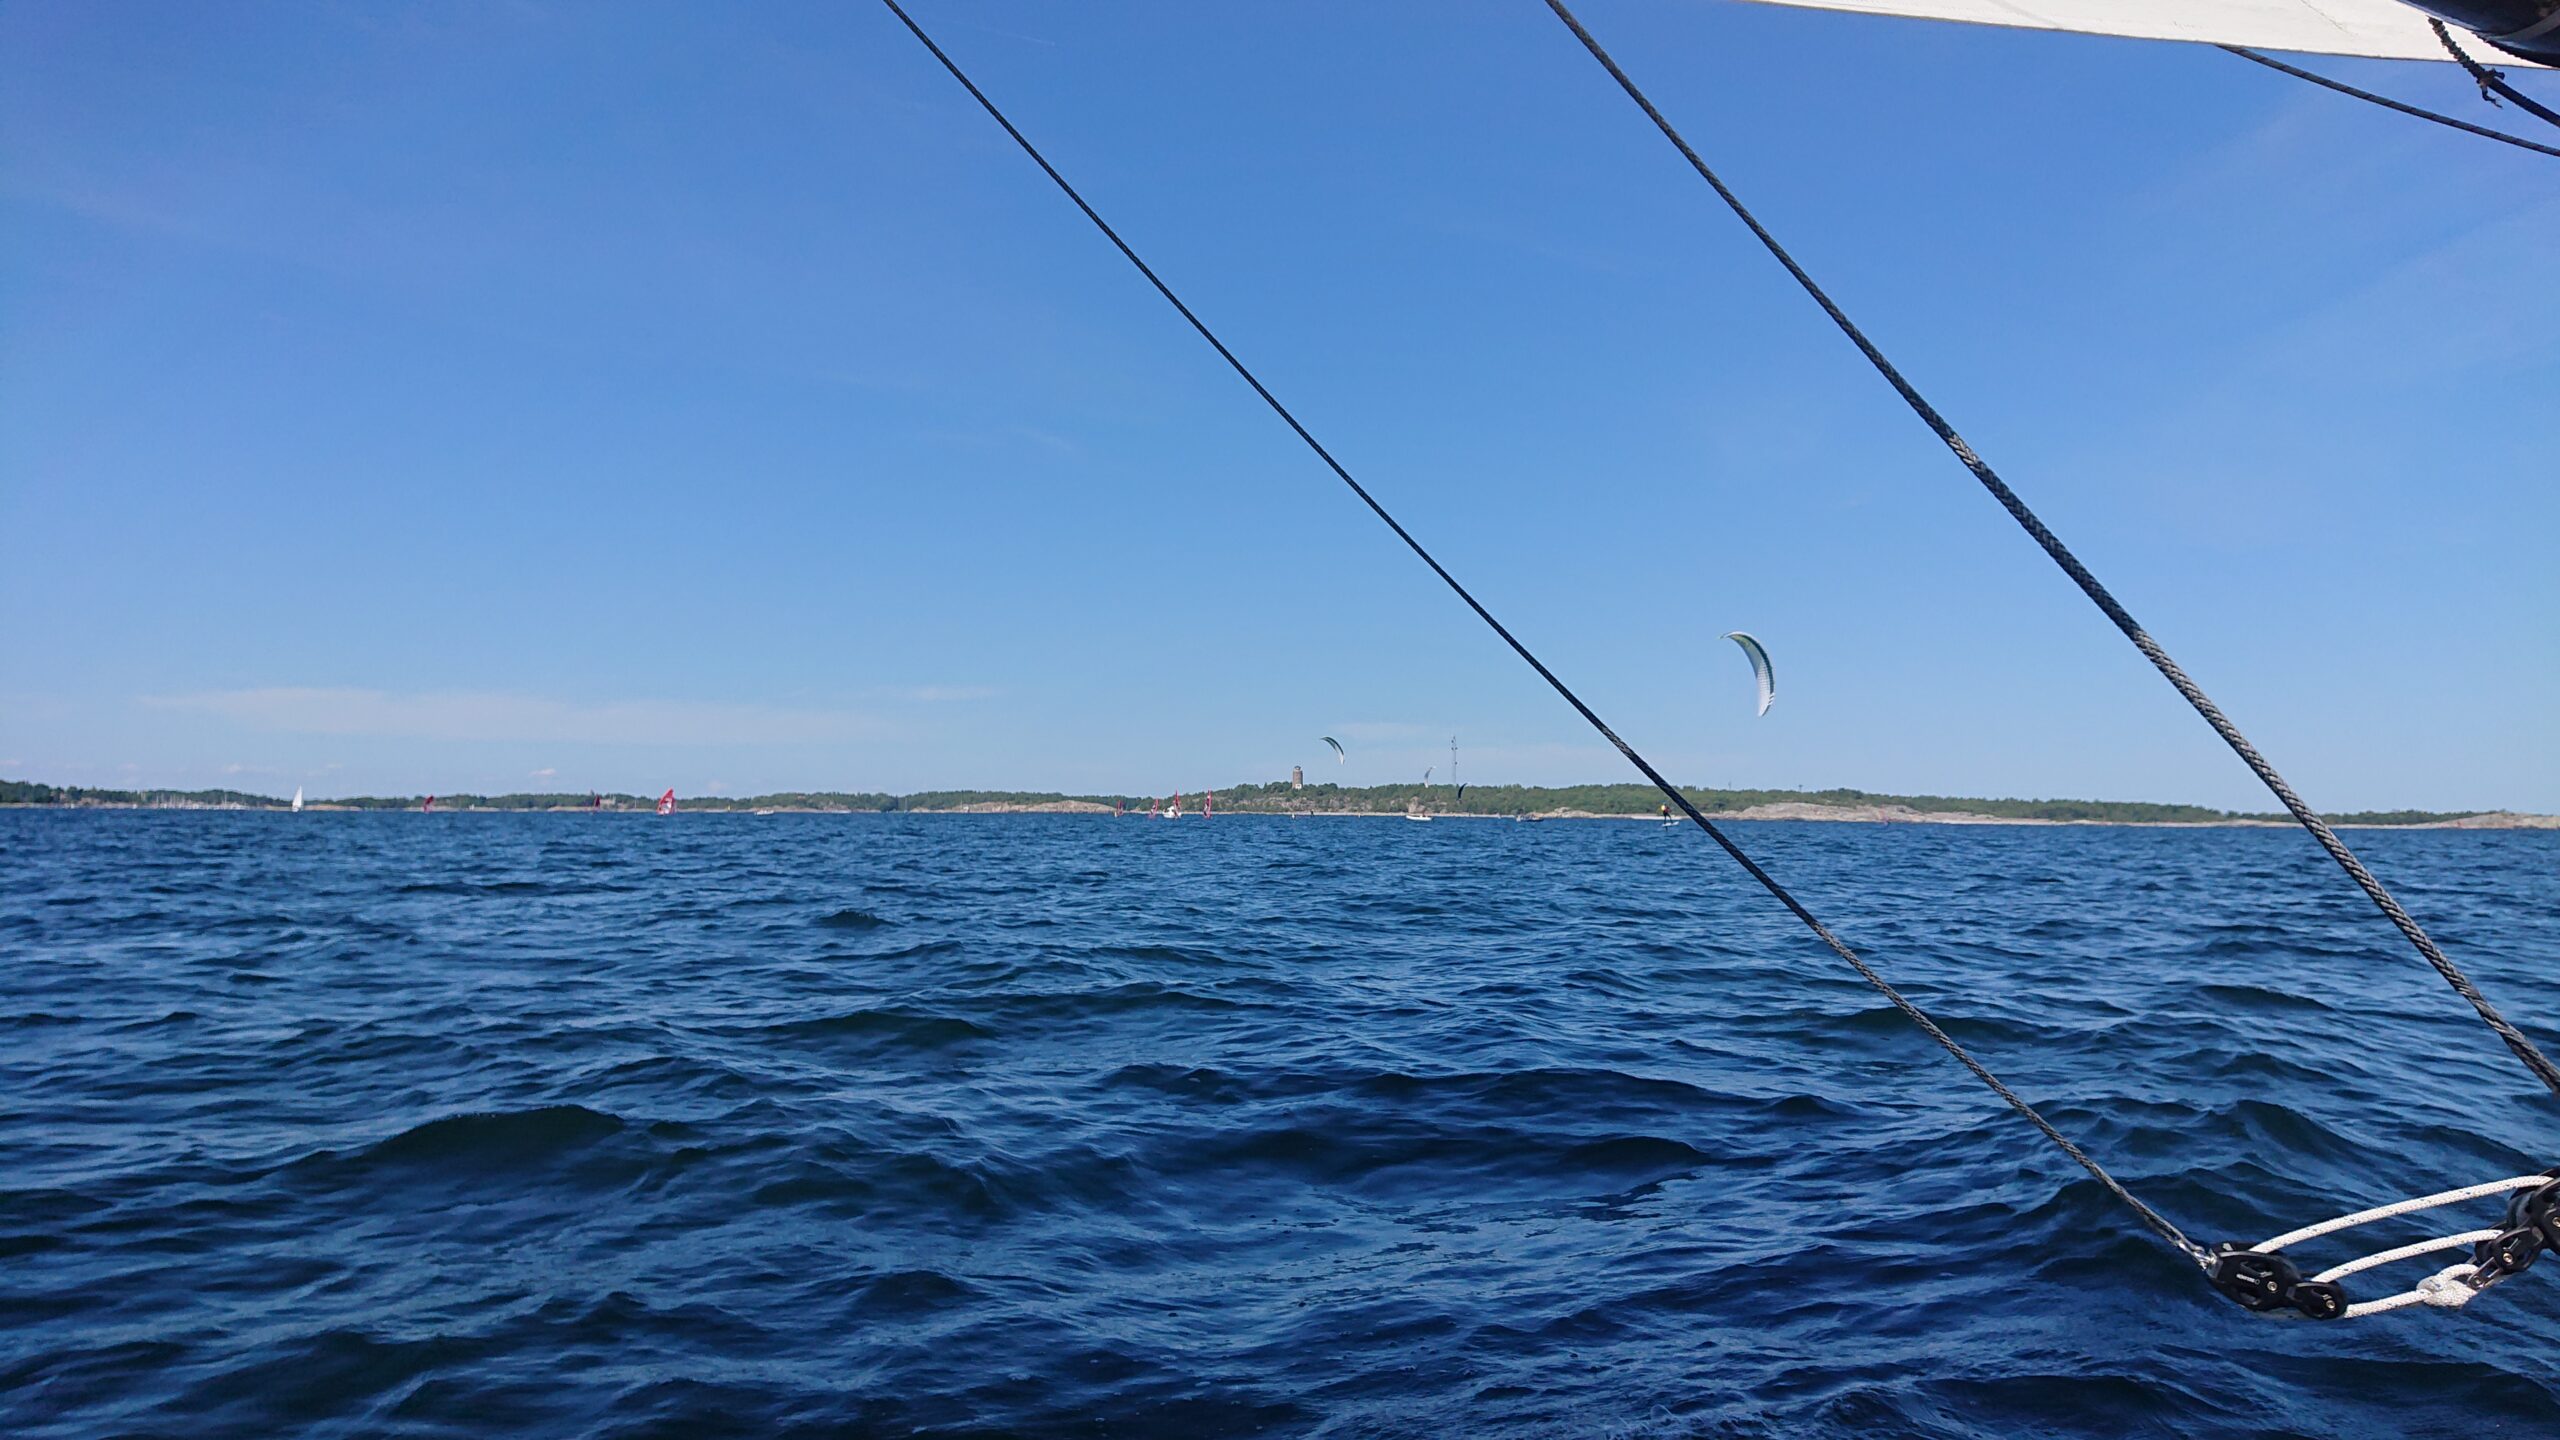 Utanför Sandhamn möter vi ultrasnabba kite-surfare med bärplan. Frågan är vilka väjningsregler som gäller? Hur vet man exempelvis om de seglar för styrbords- eller babords halsar? Foto ©Magnus Swahn